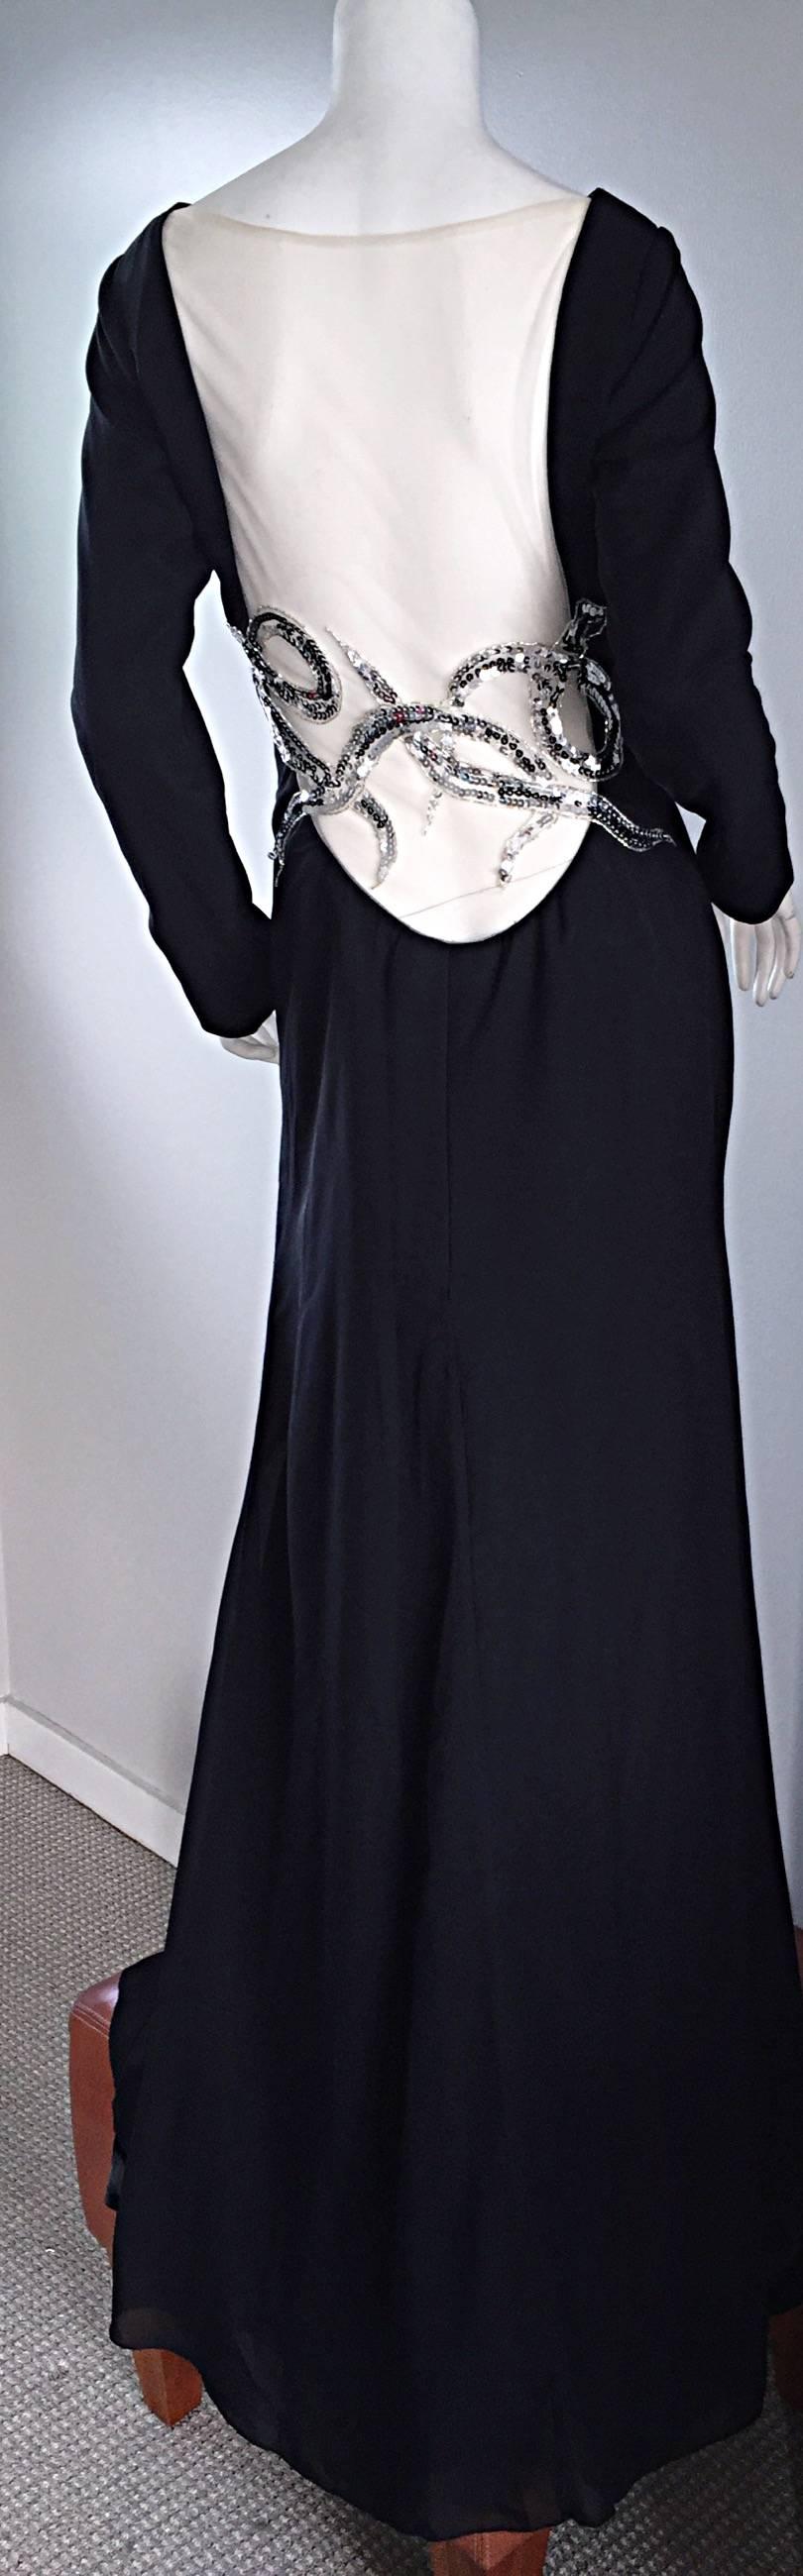 La plus sexy des robes de couture vintage (début des années 1990) en soie noire ! Elle présente une fente au niveau des cuisses, qui laisse juste assez de place à l'imagination. La longue traîne dramatique met merveilleusement en valeur la fente !